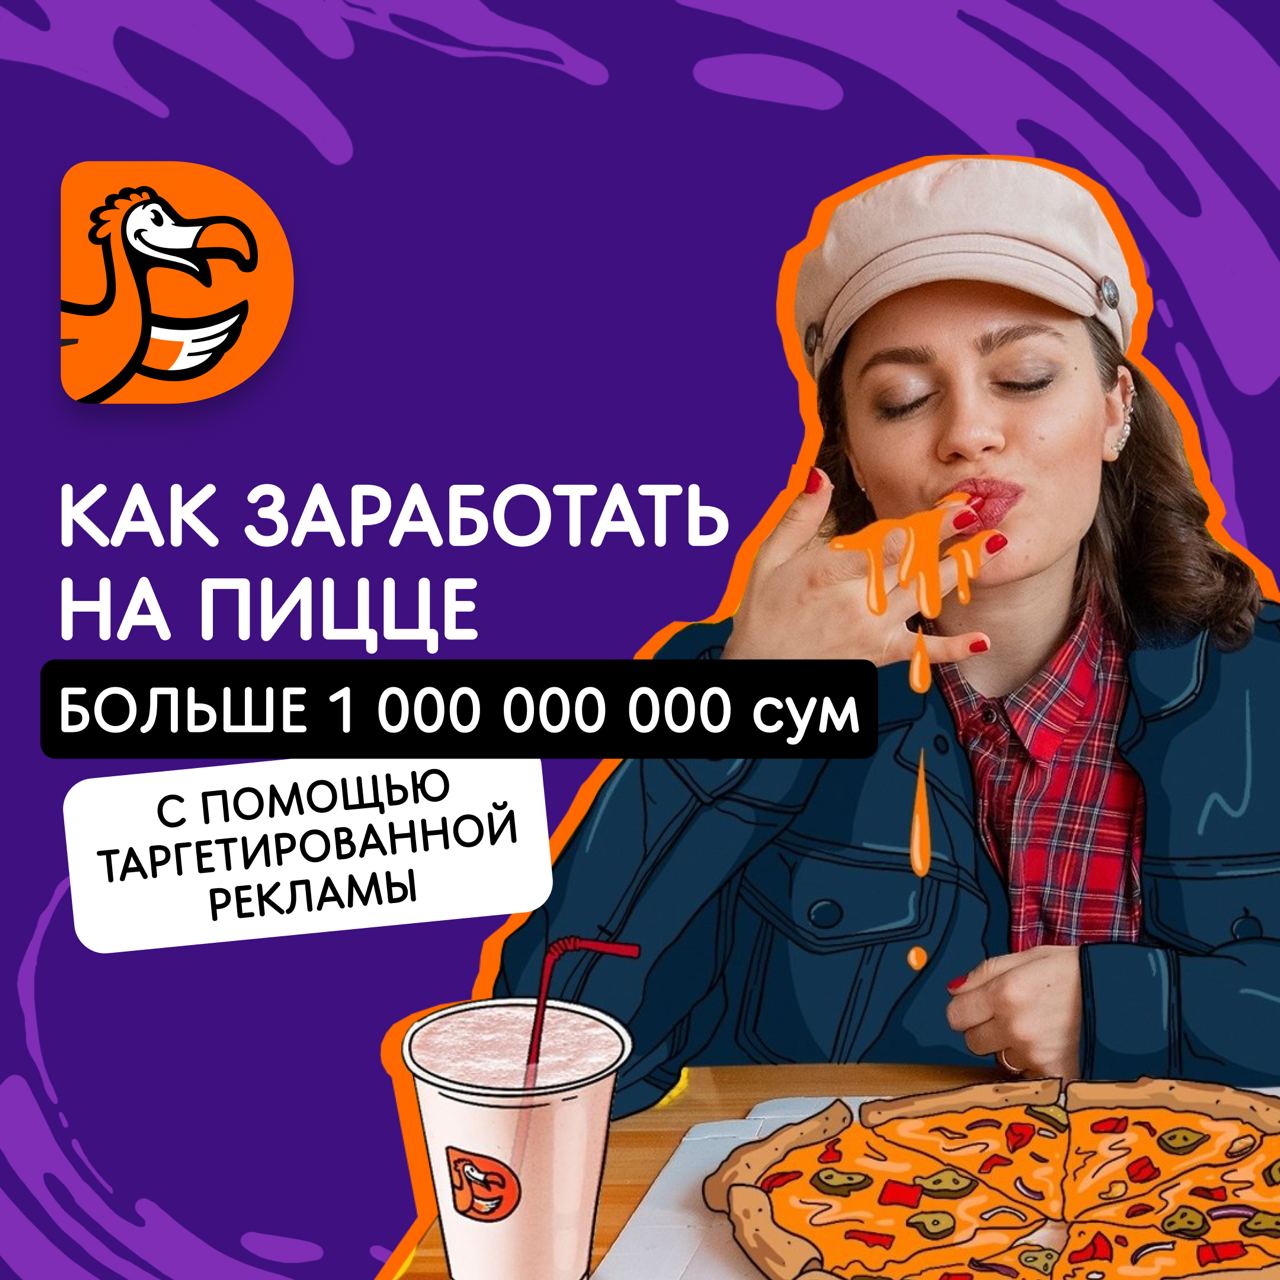 Как заработать на пицце больше 1 000 000 000 сум с помощью таргетированной рекламы